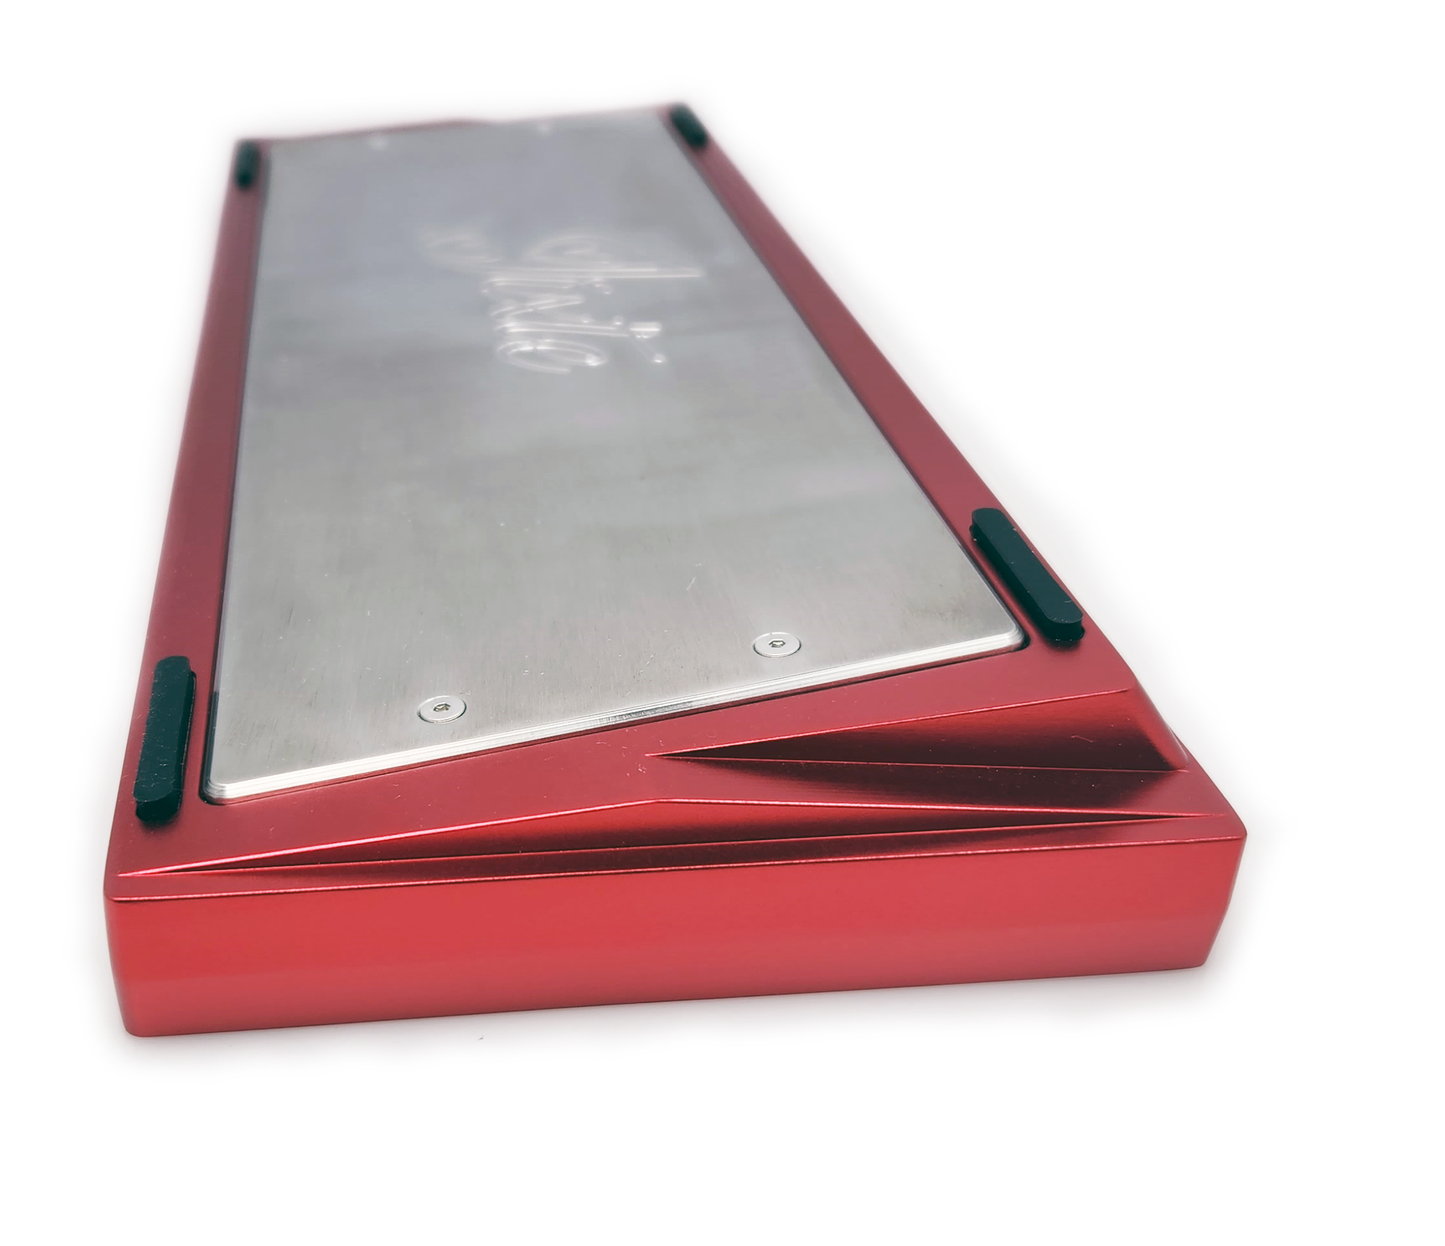 Type 0 Jixte 60% Cnc Alumimum Keyboard Red/Stainless steel brushed PK-02